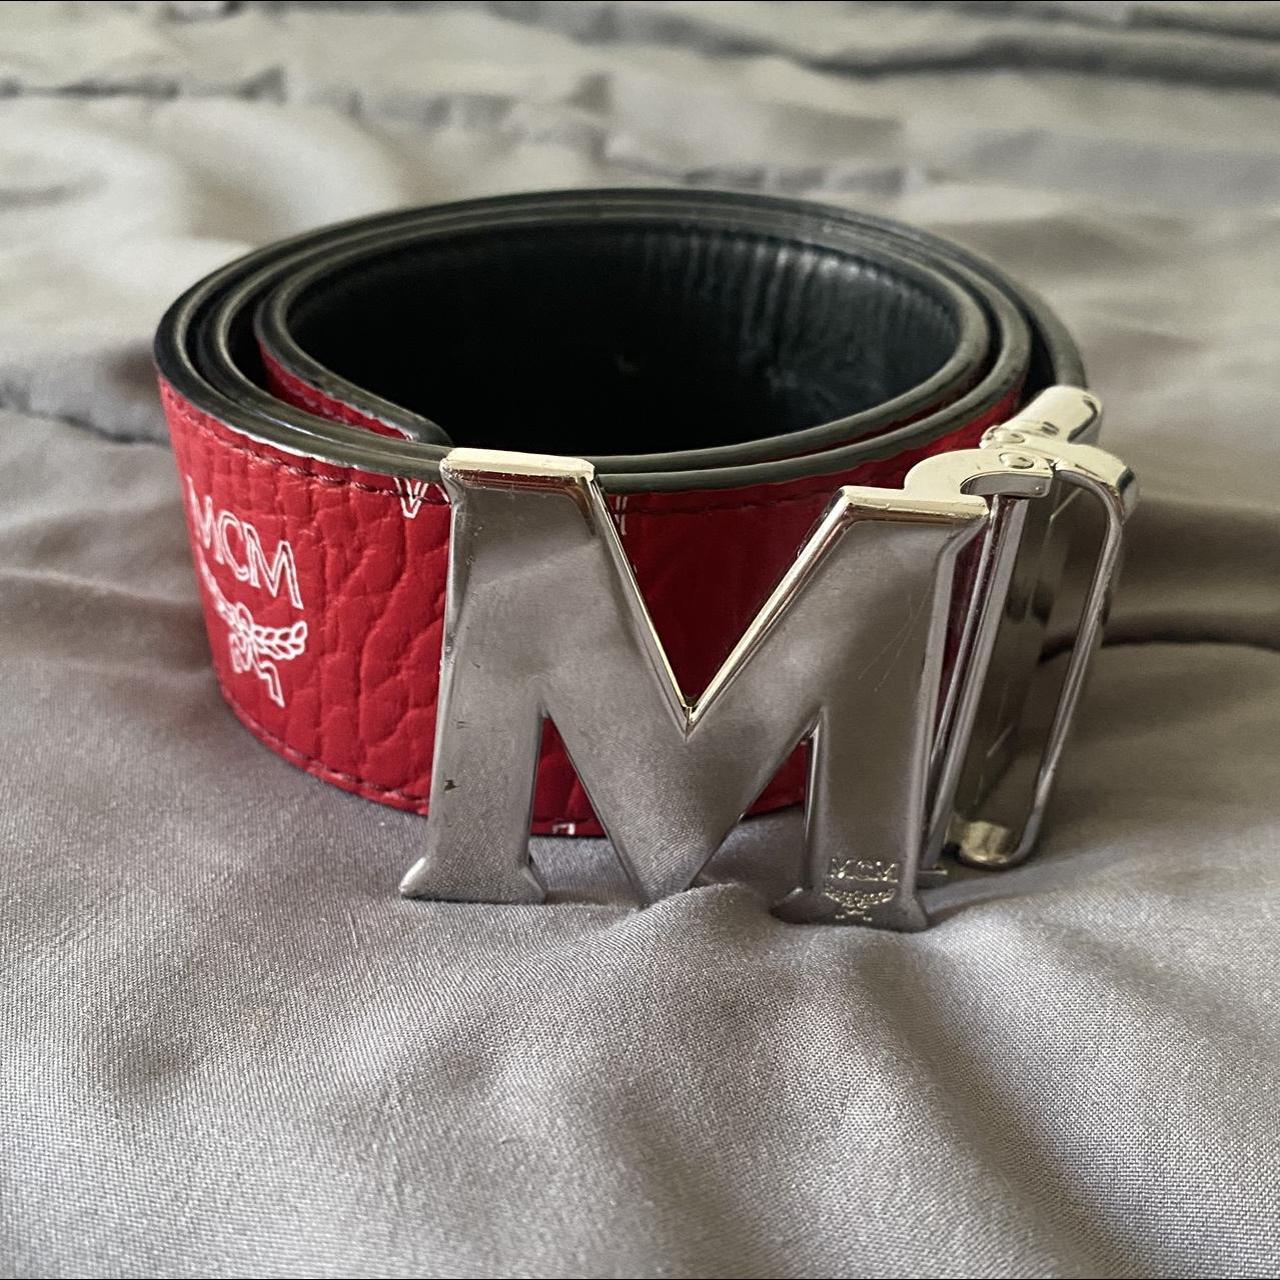 Mcm Men's Belt - Black